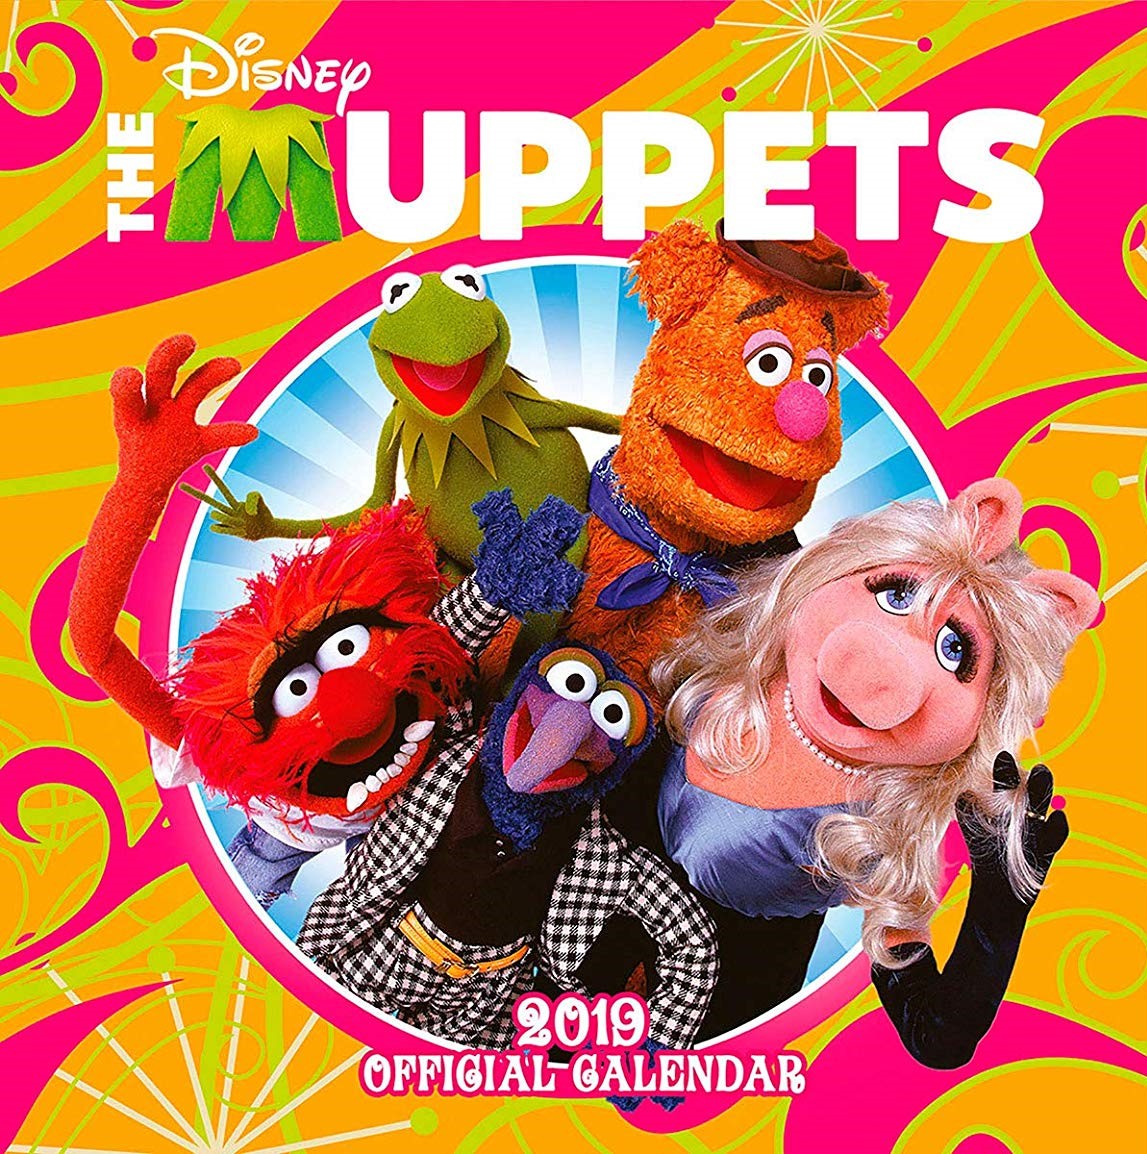 Muppet Stuff A New Year, New Calendars!